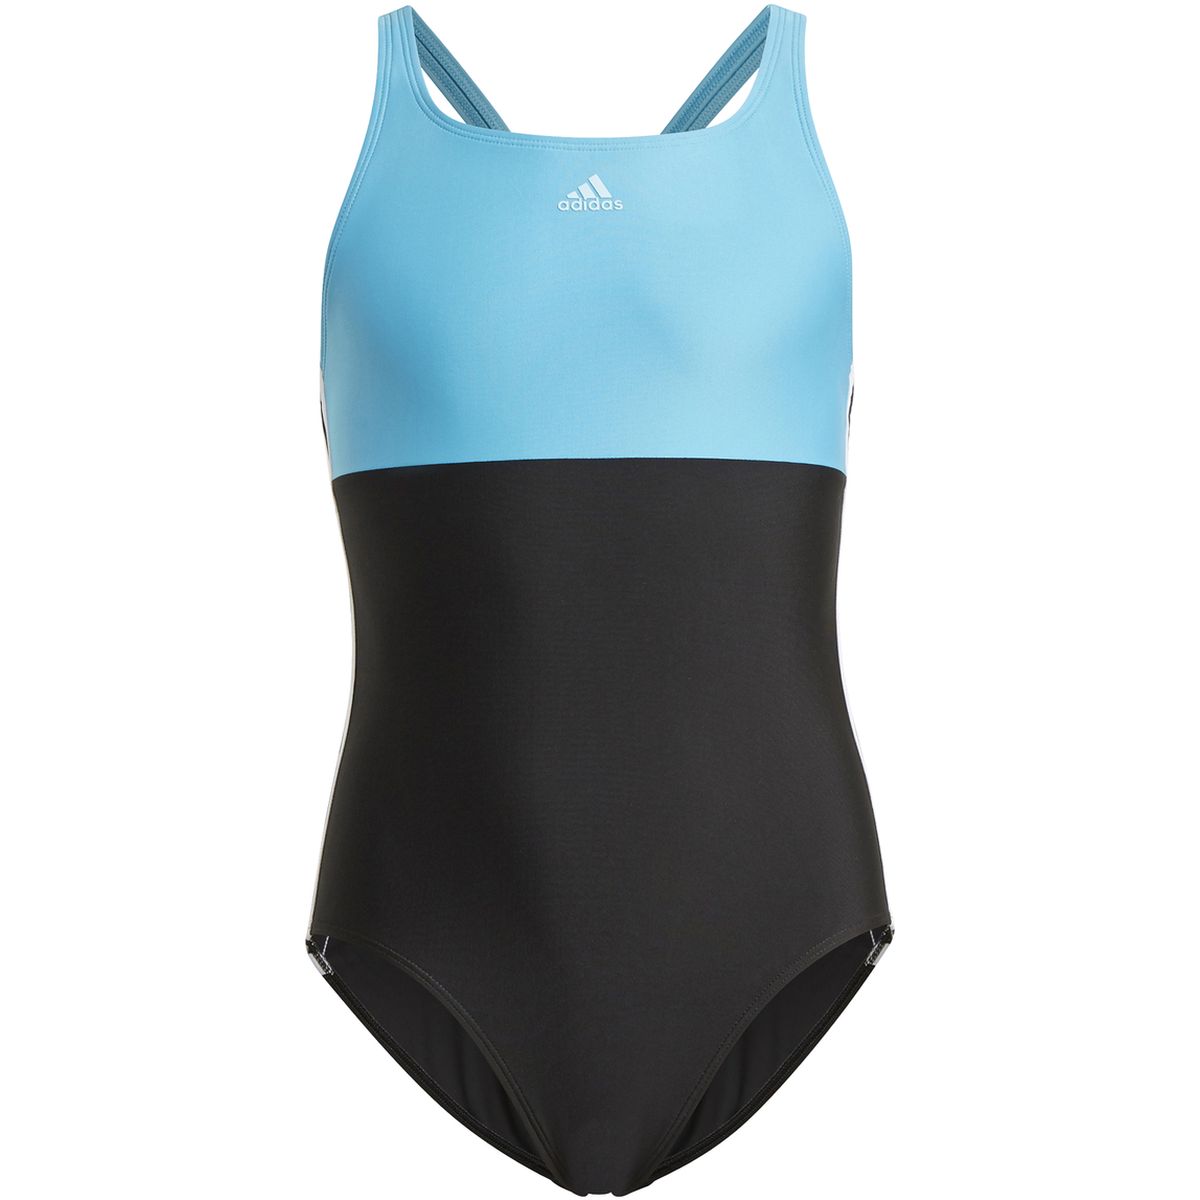 Adidas Colorblock 3-Streifen Badeanzug Mädchen